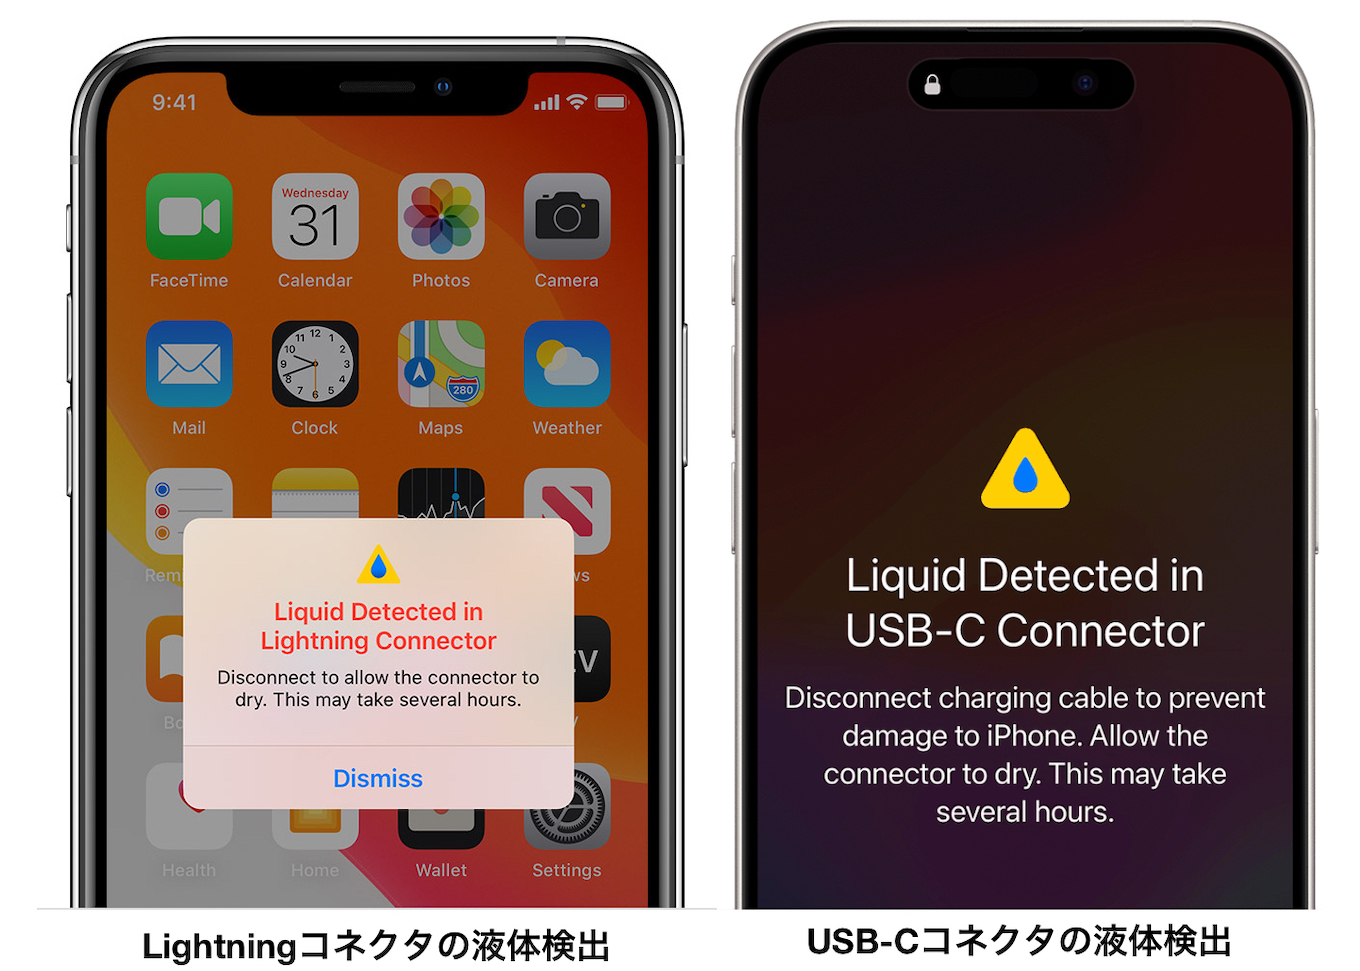 Lightningコネクタを搭載したiPhoneとUSB-Cコネクタを搭載したiPhoneの液体検出警告